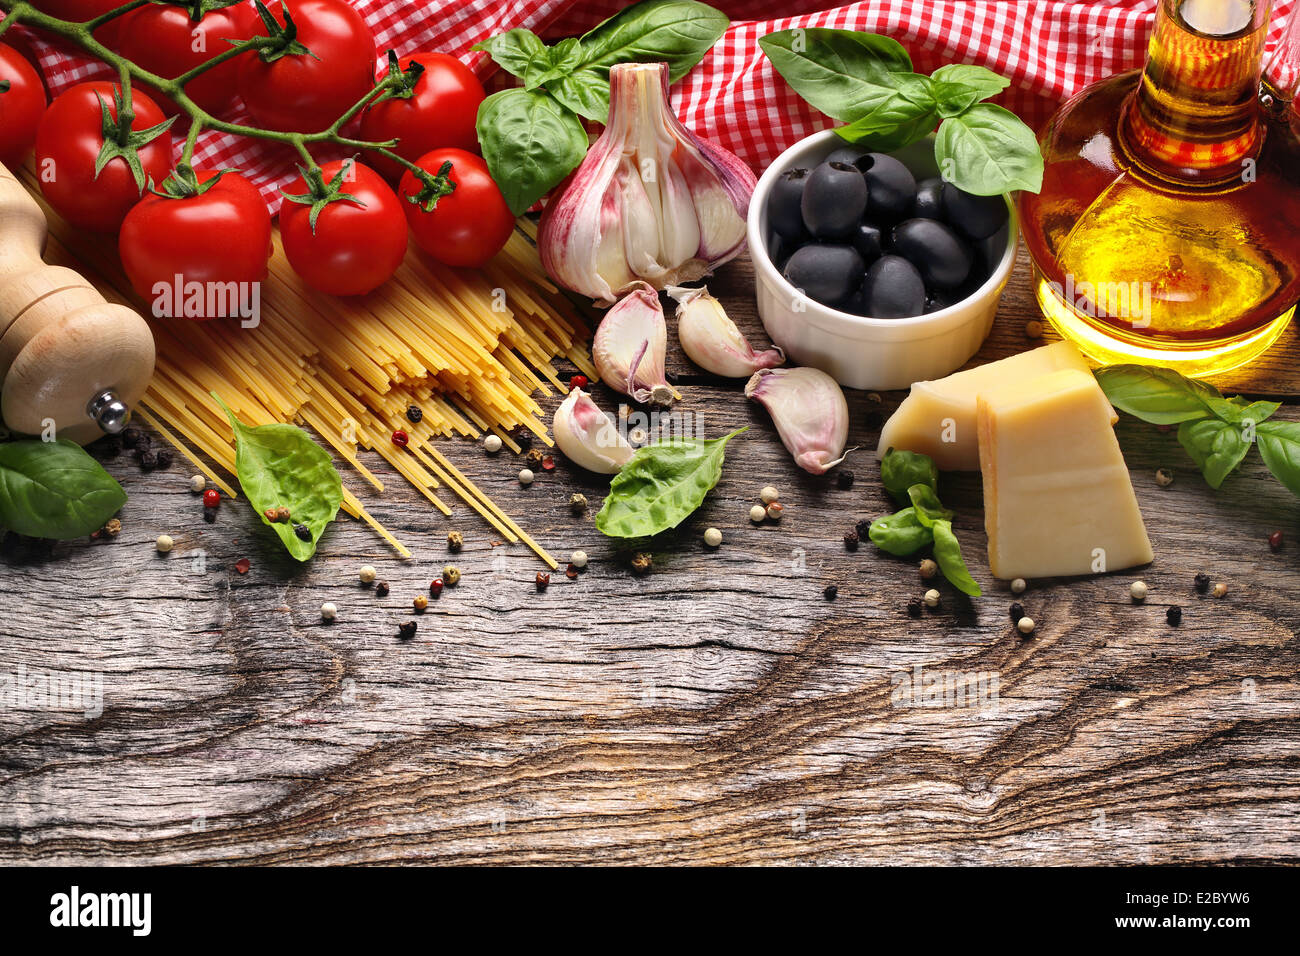 Ingrédients alimentaires italiennes sur fond de bois Banque D'Images